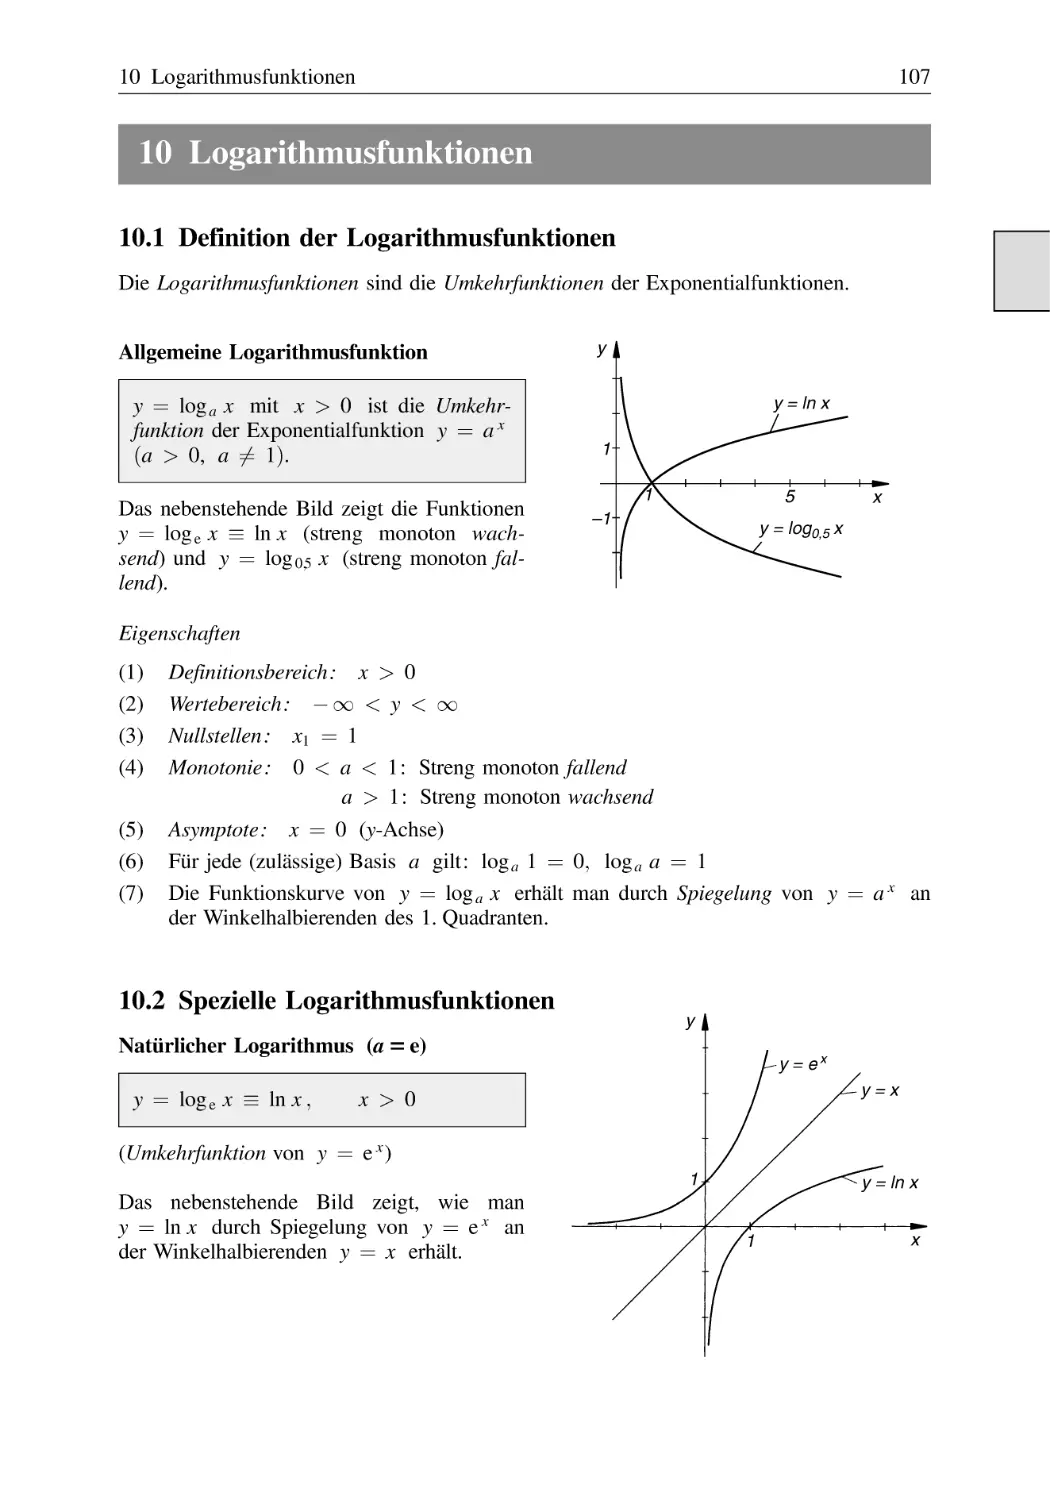 10 Logarithmusfunktionen
10.1 Definition der Logarithmusfunktionen
10.2 Spezielle Logarithmusfunktionen